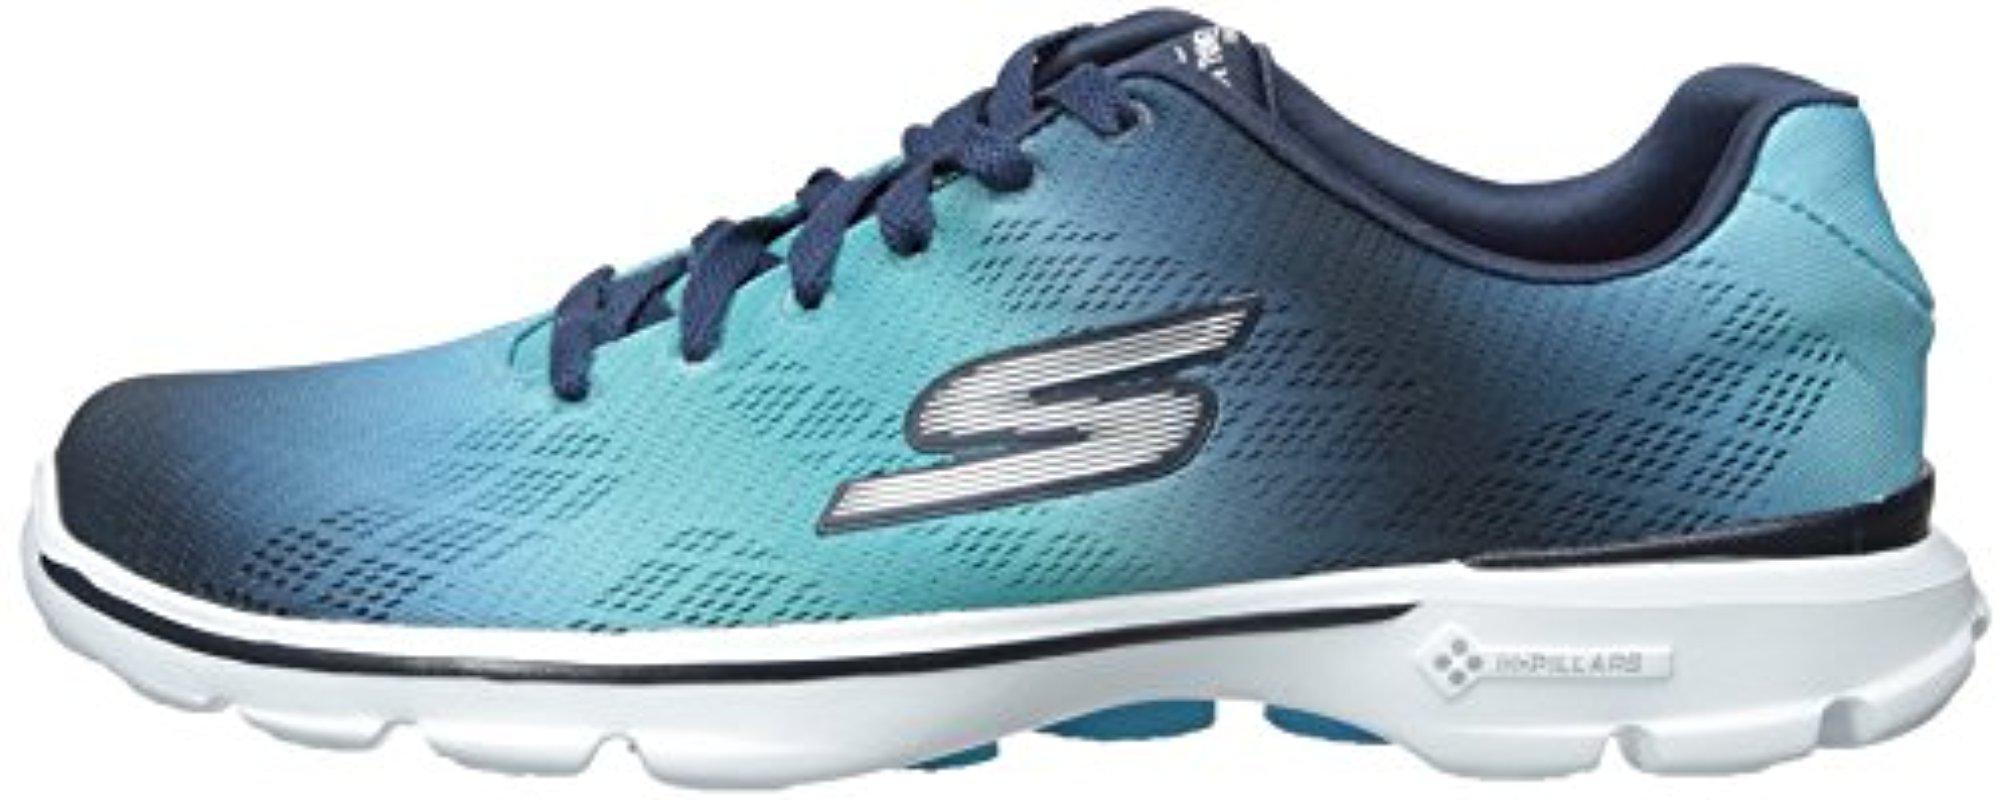 Skechers Performance Go Walk 3 Lace-up Walking Shoe in Blue | Lyst